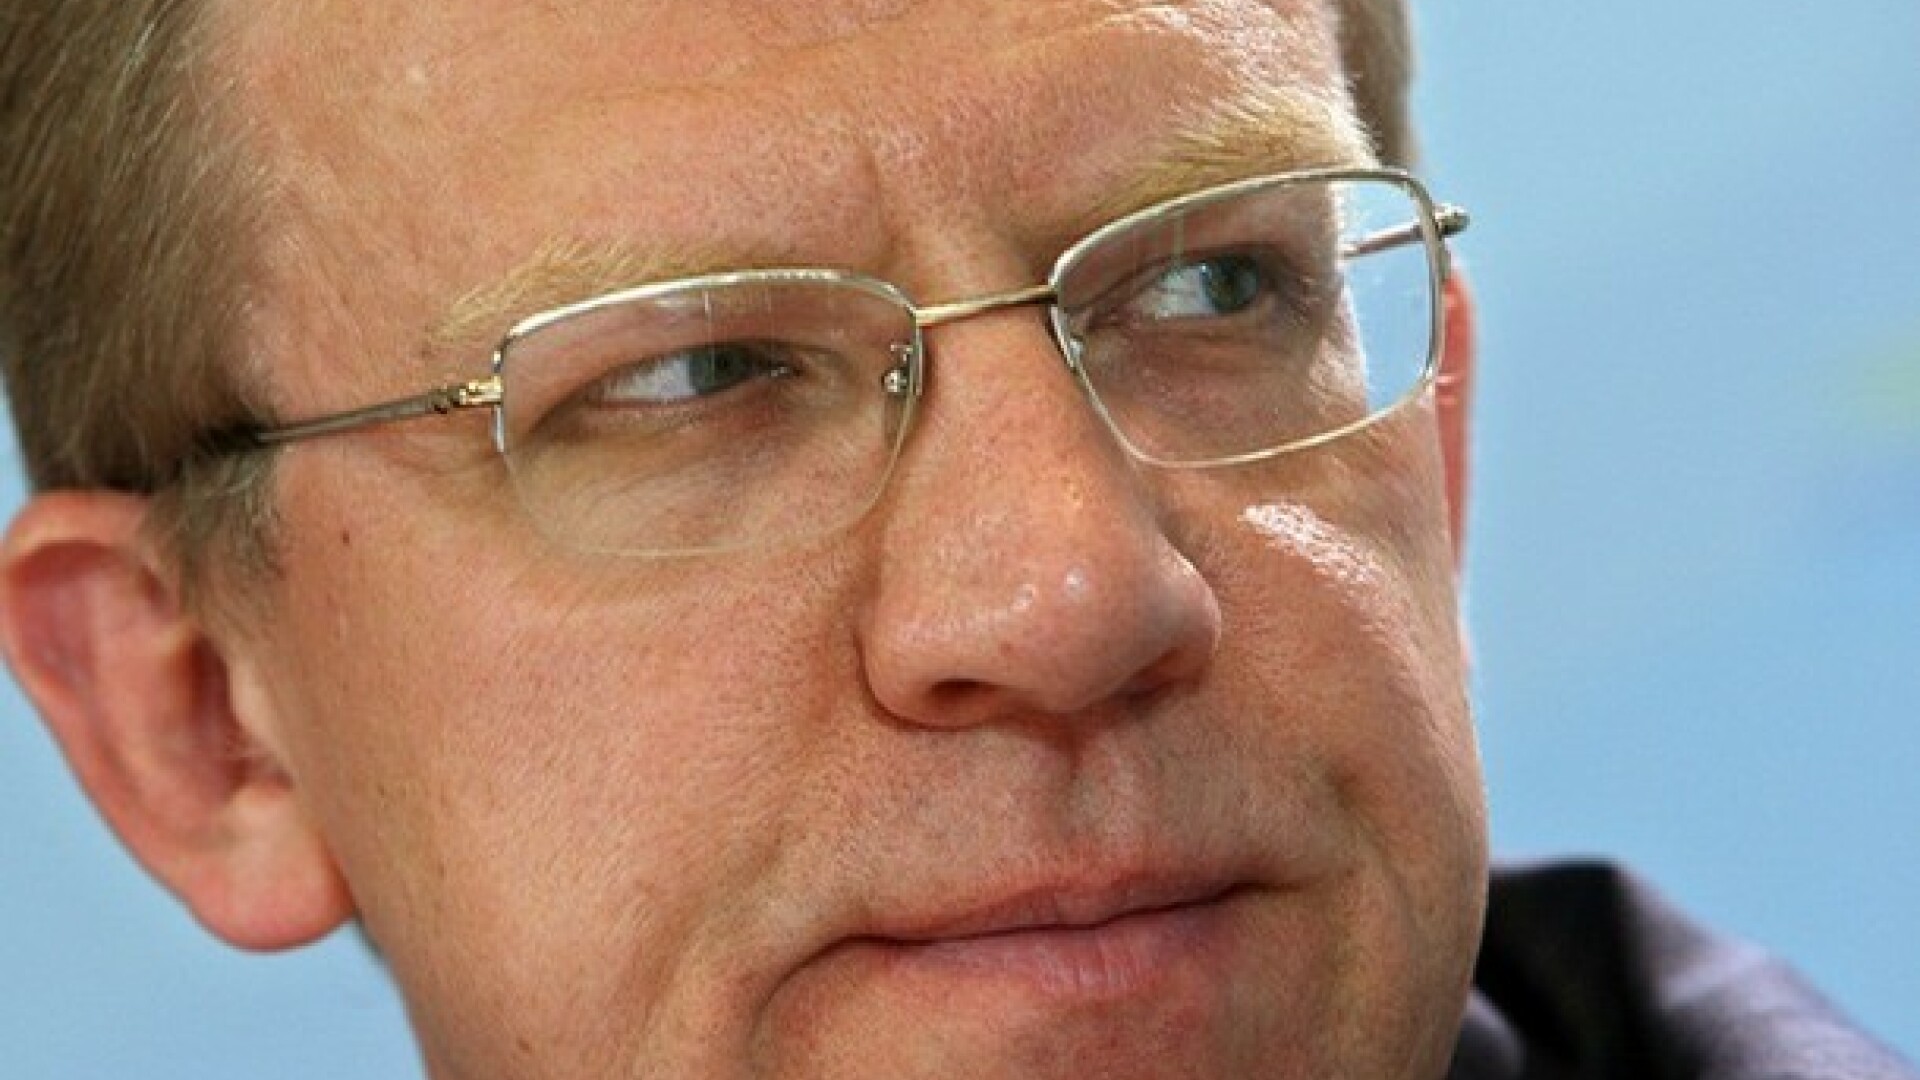 Ministrul Finantelor, Alexei Kudrin